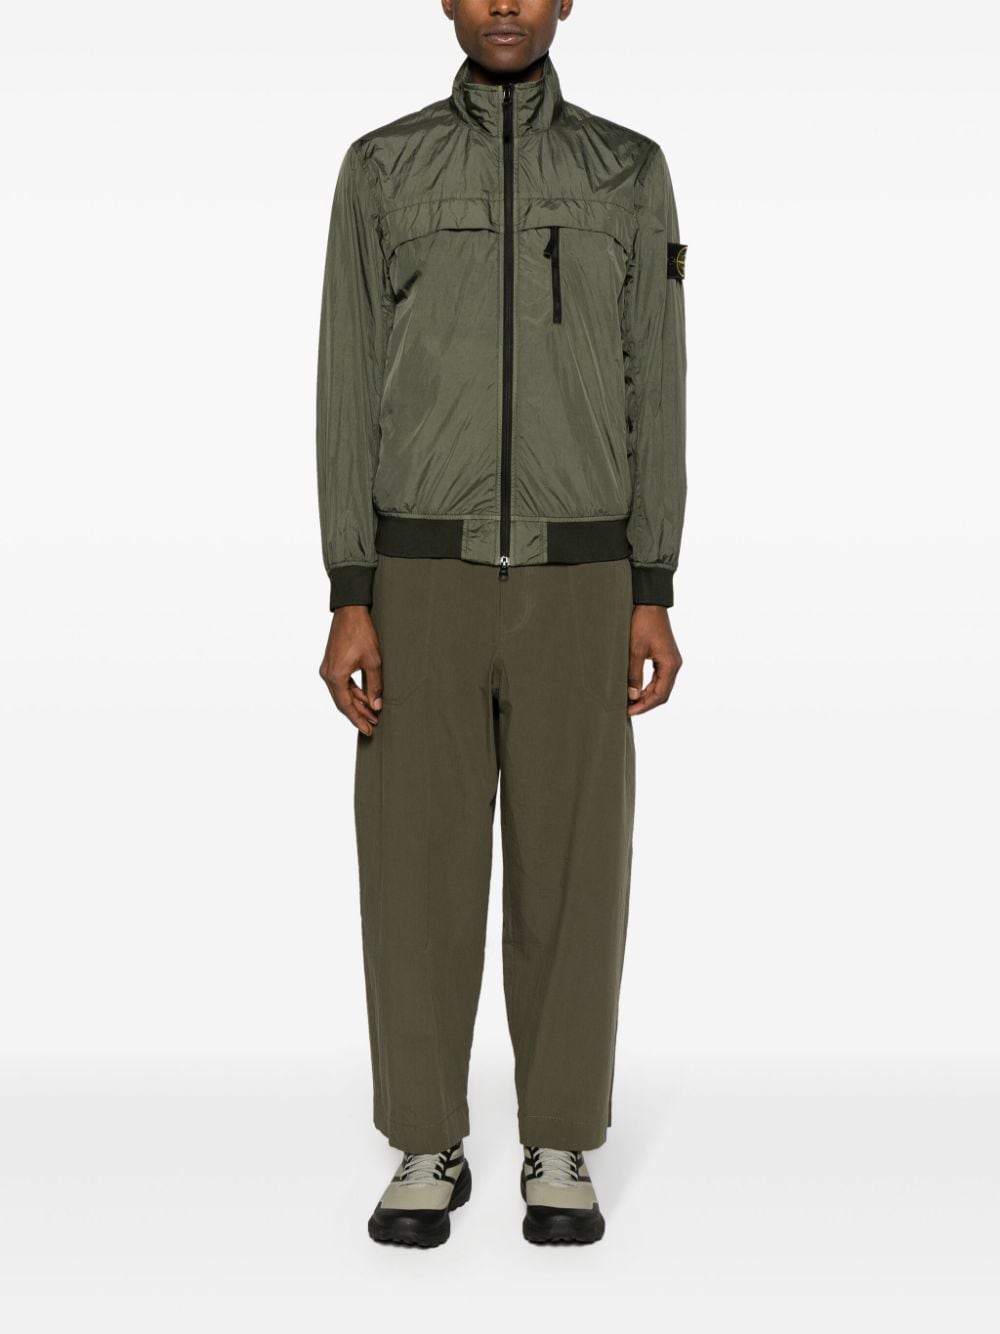 STONE ISLAND Military Green Crinkled Nylon Reps Jacket for Men